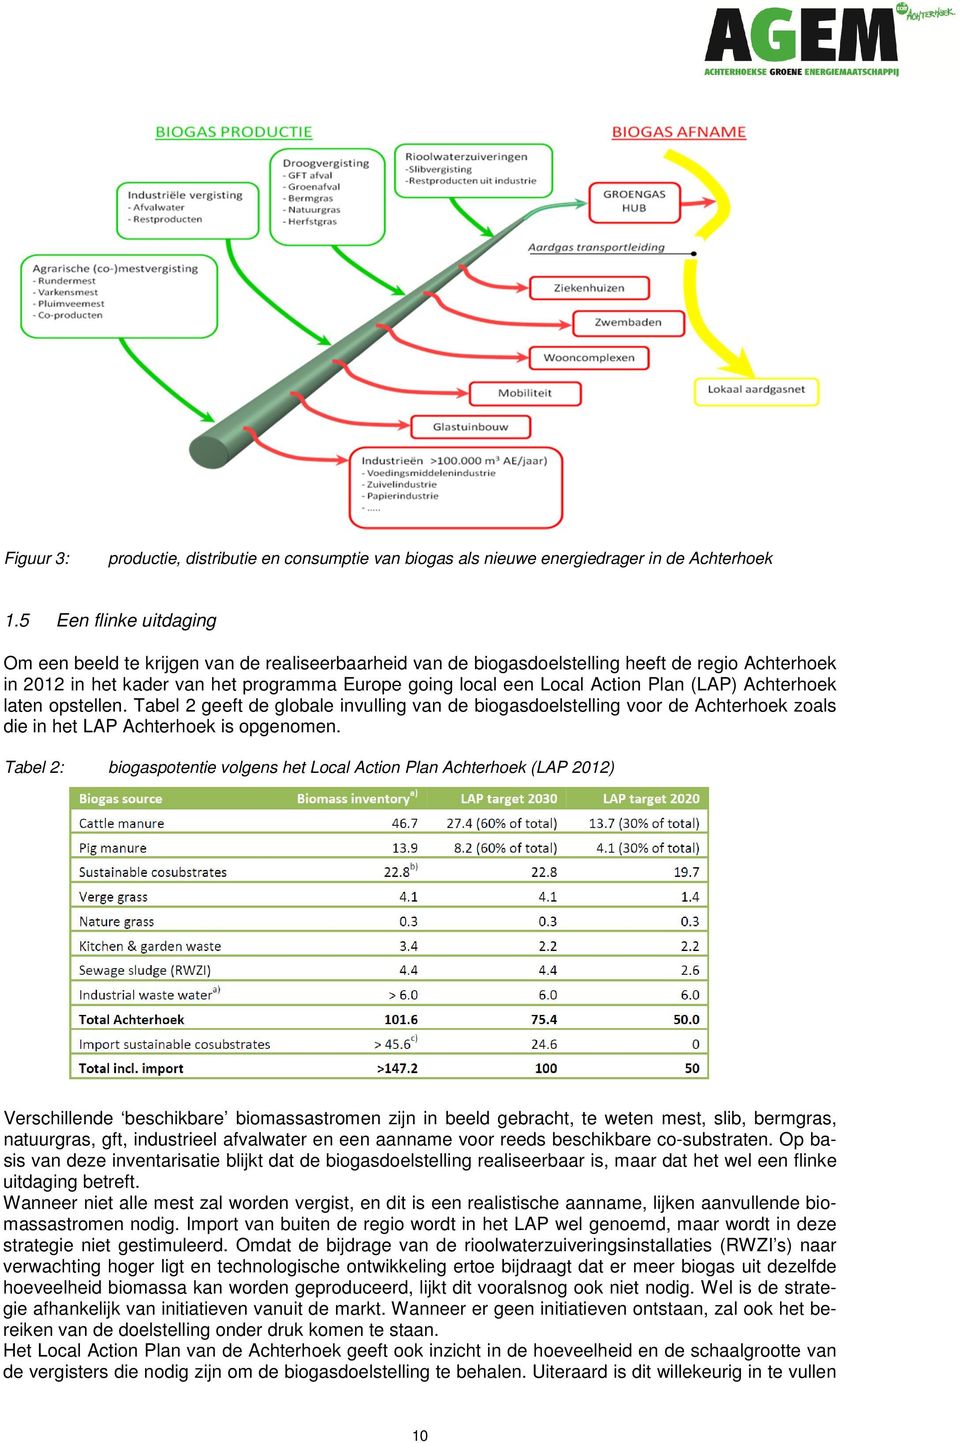 Plan (LAP) Achterhoek laten opstellen. Tabel 2 geeft de globale invulling van de biogasdoelstelling voor de Achterhoek zoals die in het LAP Achterhoek is opgenomen.